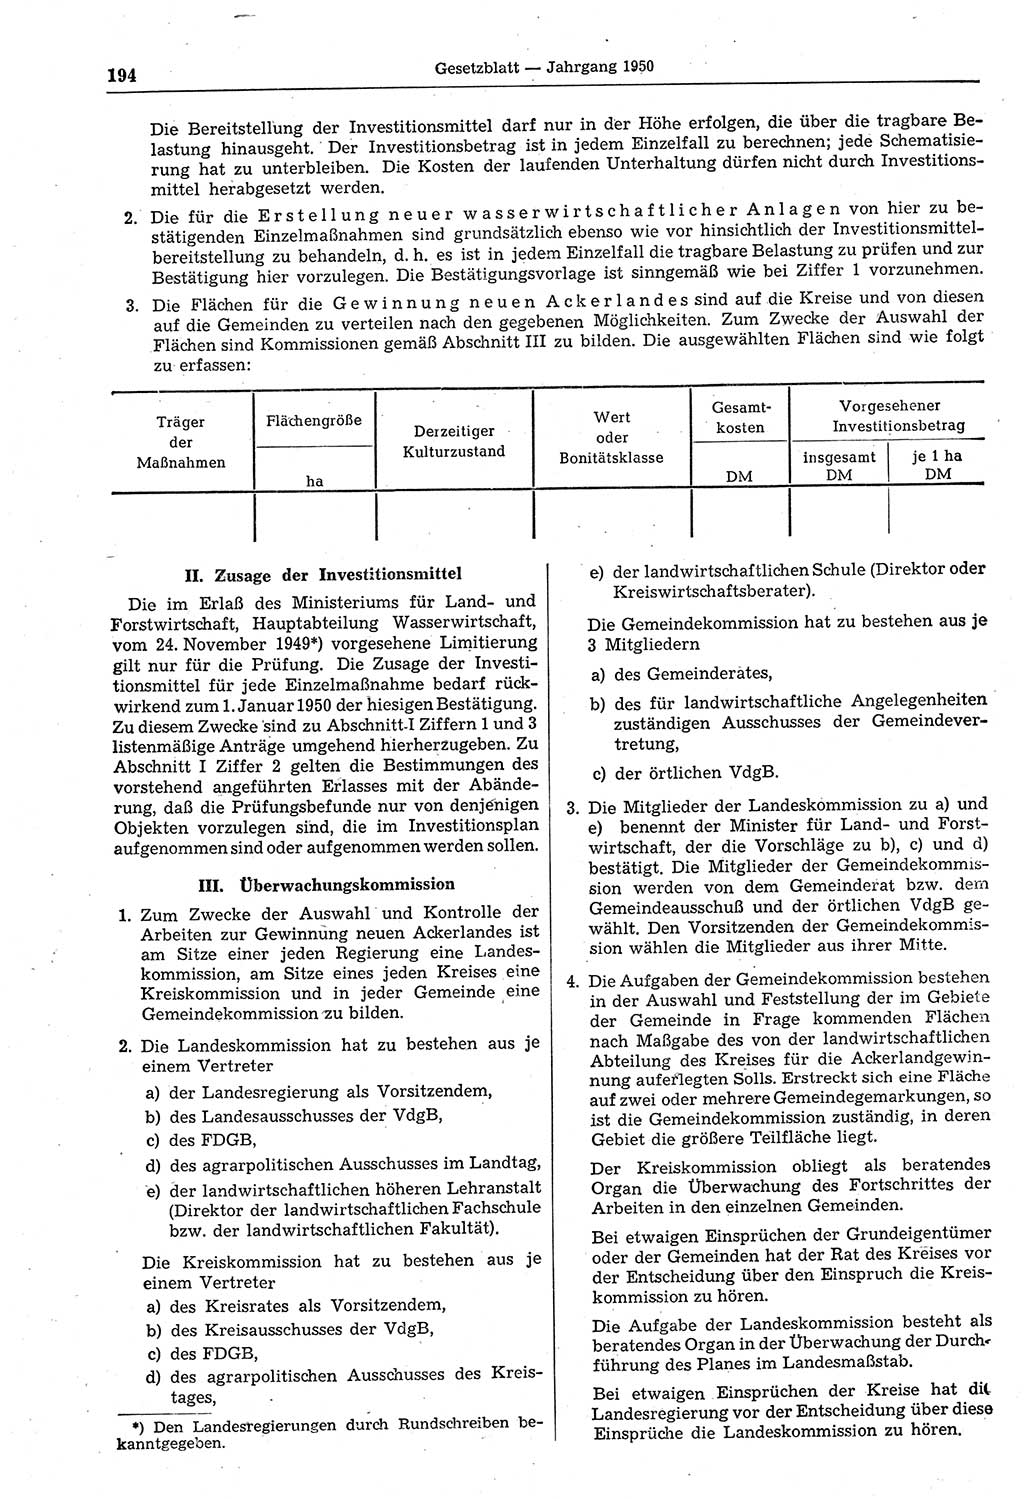 Gesetzblatt (GBl.) der Deutschen Demokratischen Republik (DDR) 1950, Seite 194 (GBl. DDR 1950, S. 194)